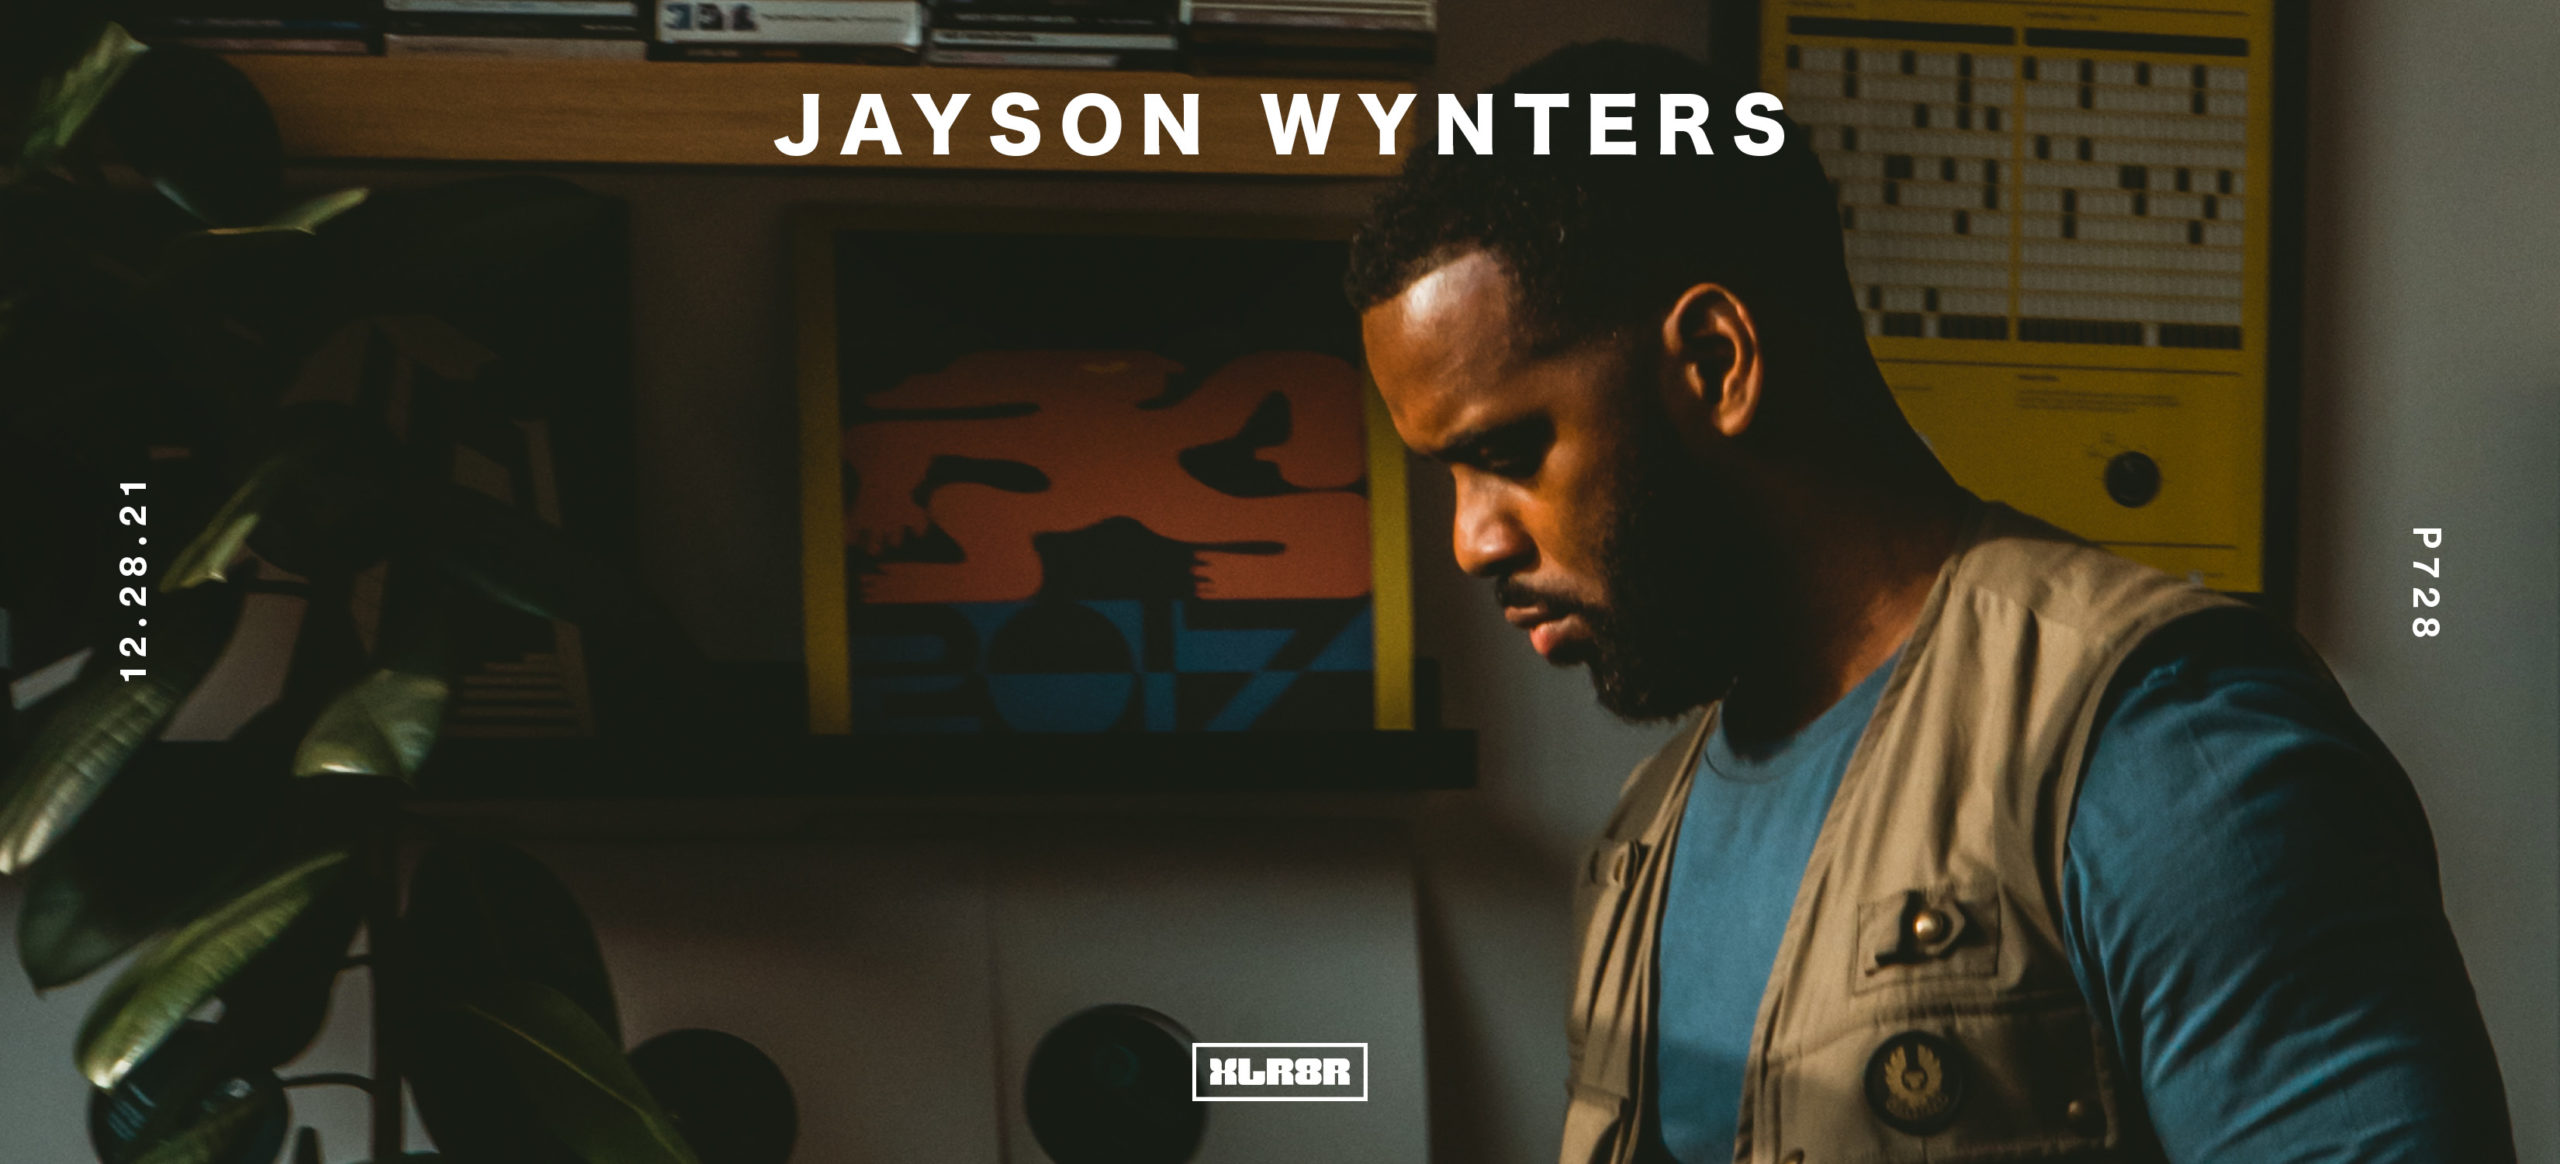 Podcast 728: Jayson WyntersPodcast 728: Jayson Wynters